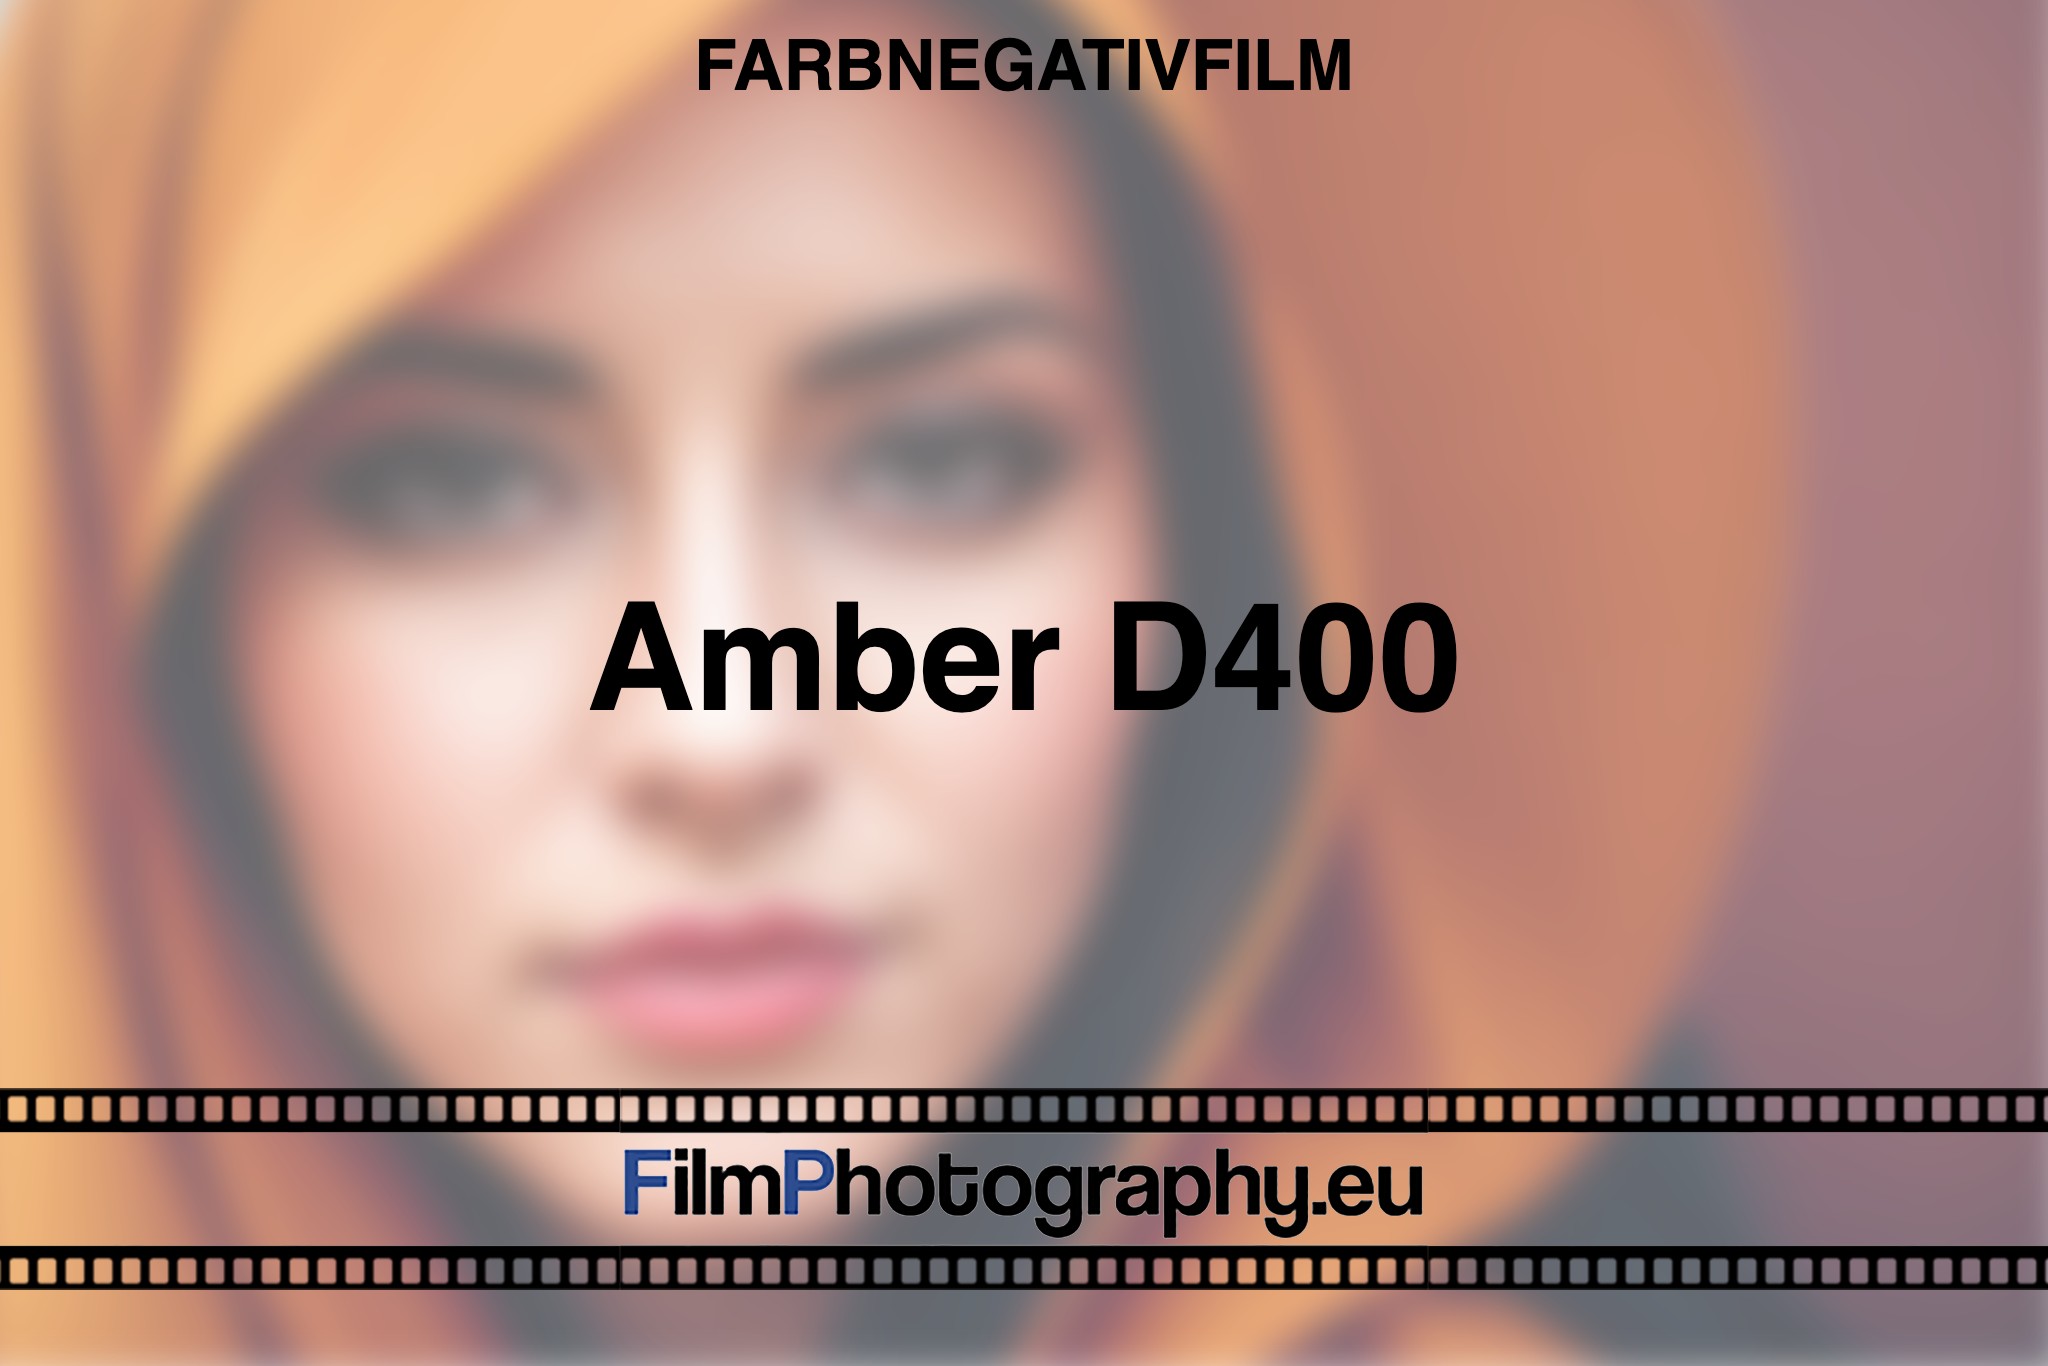 Amber-D400-Farbnegativfilm-bnv